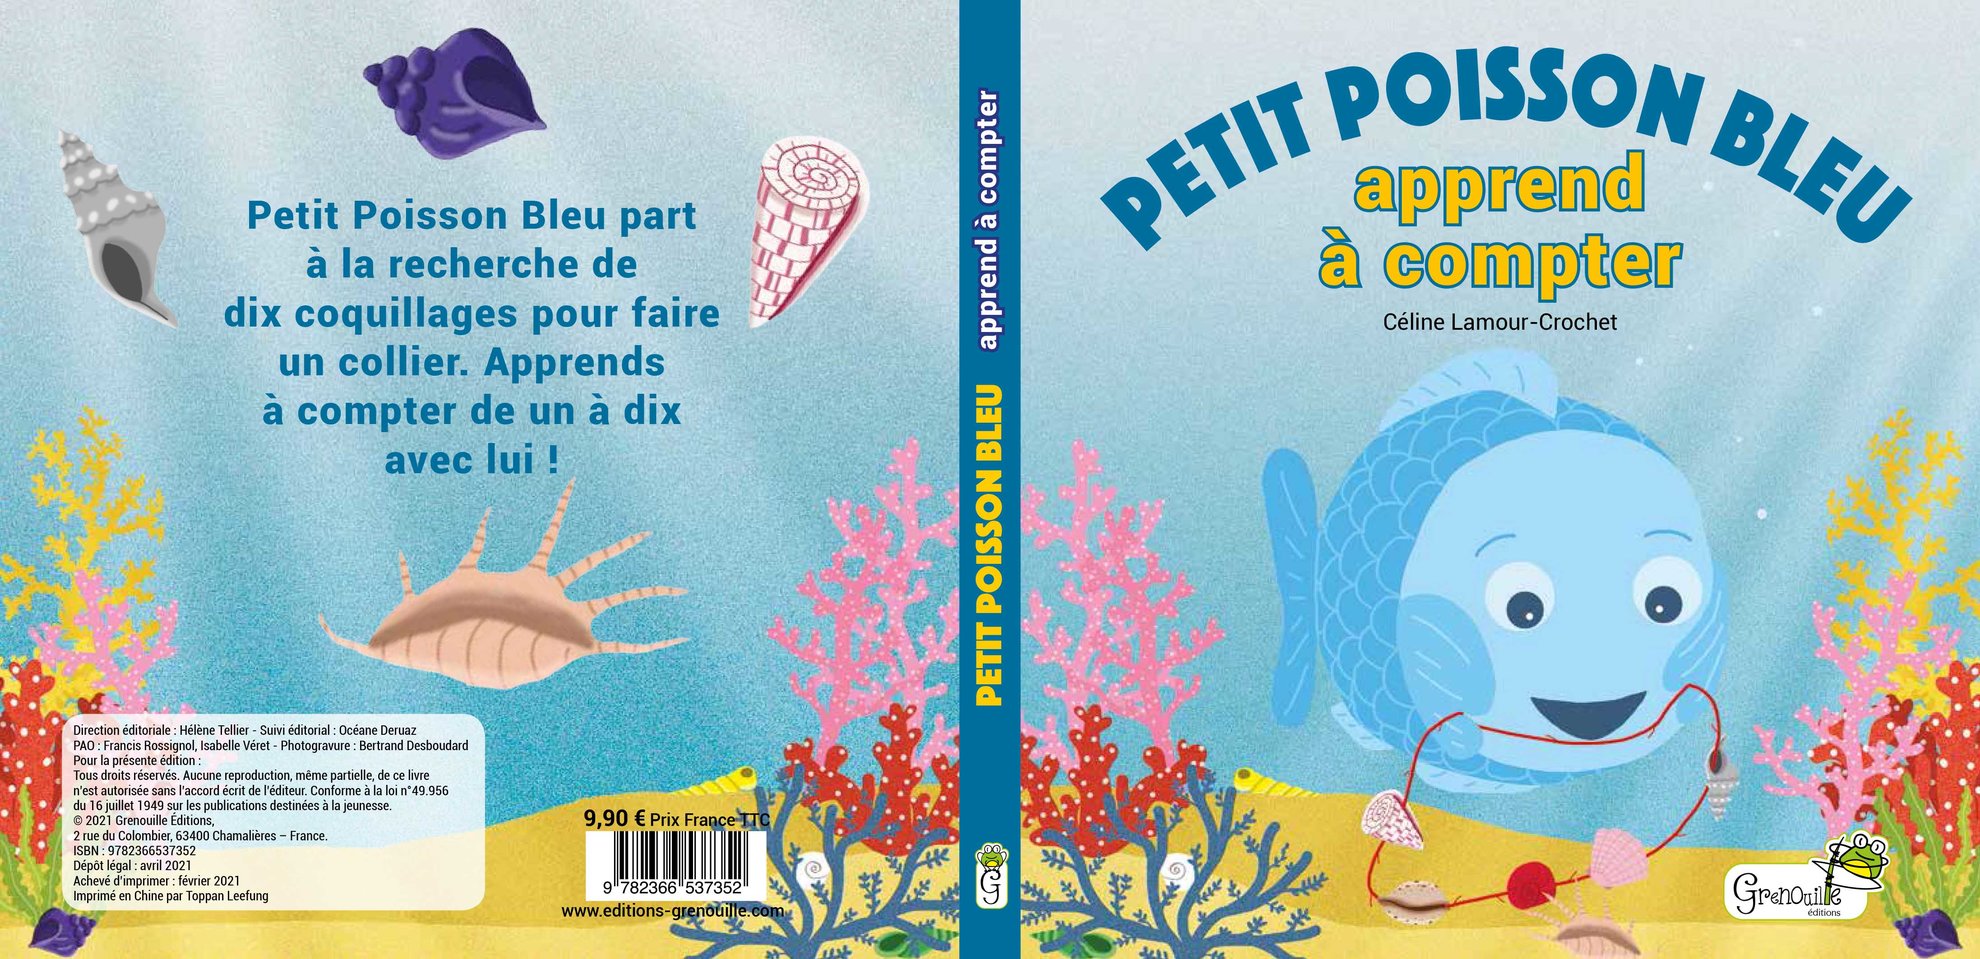 Petit Poisson Bleu apprend à compter, Grenouille éditions, mai 2021